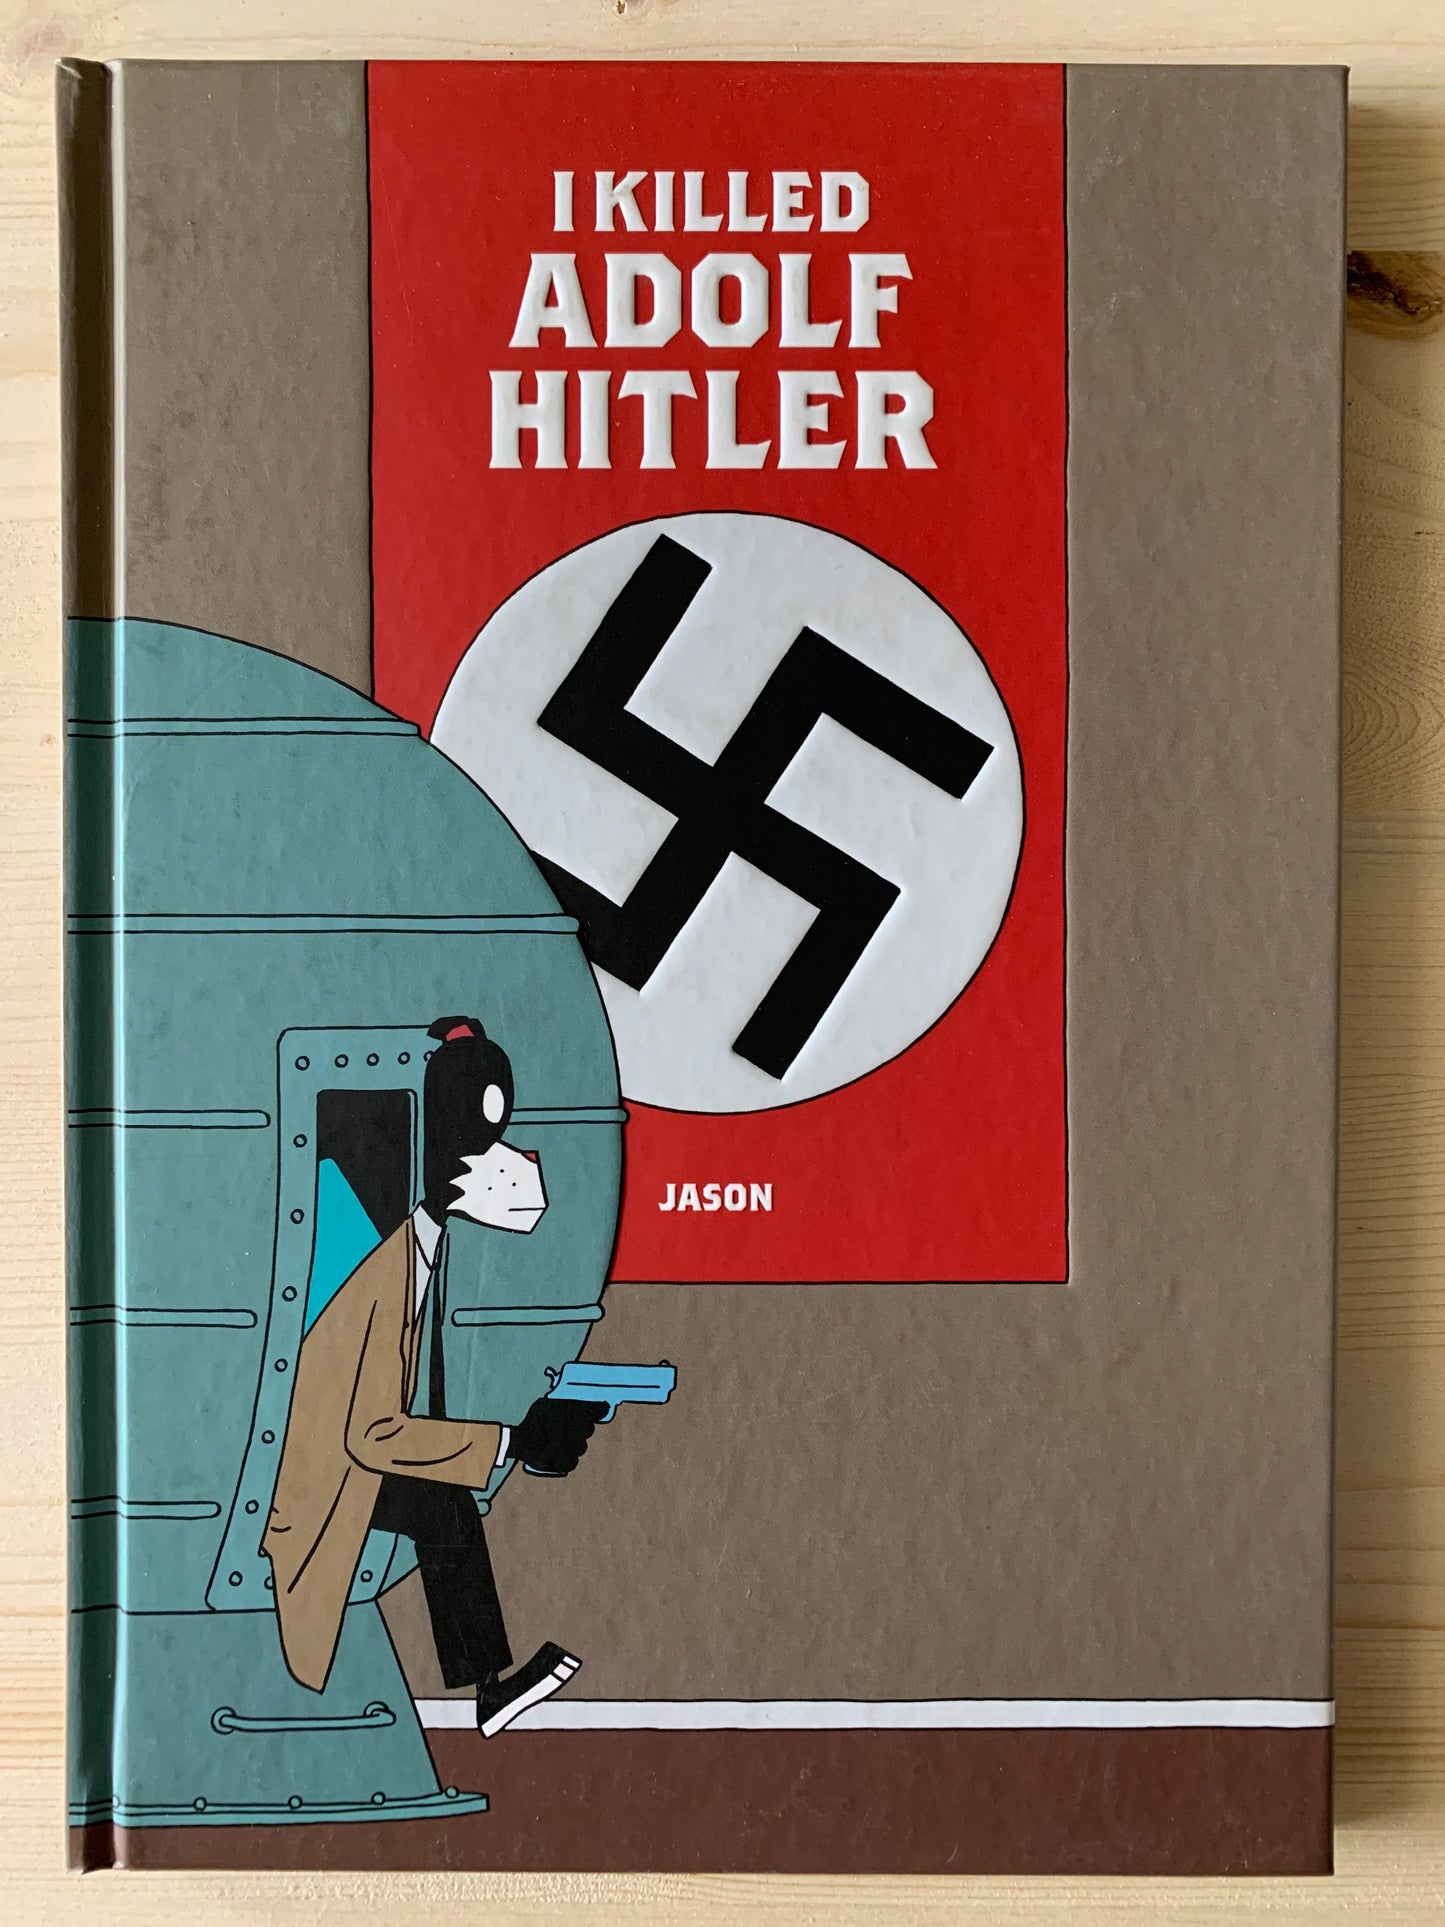 I Killed Adolf Hitler